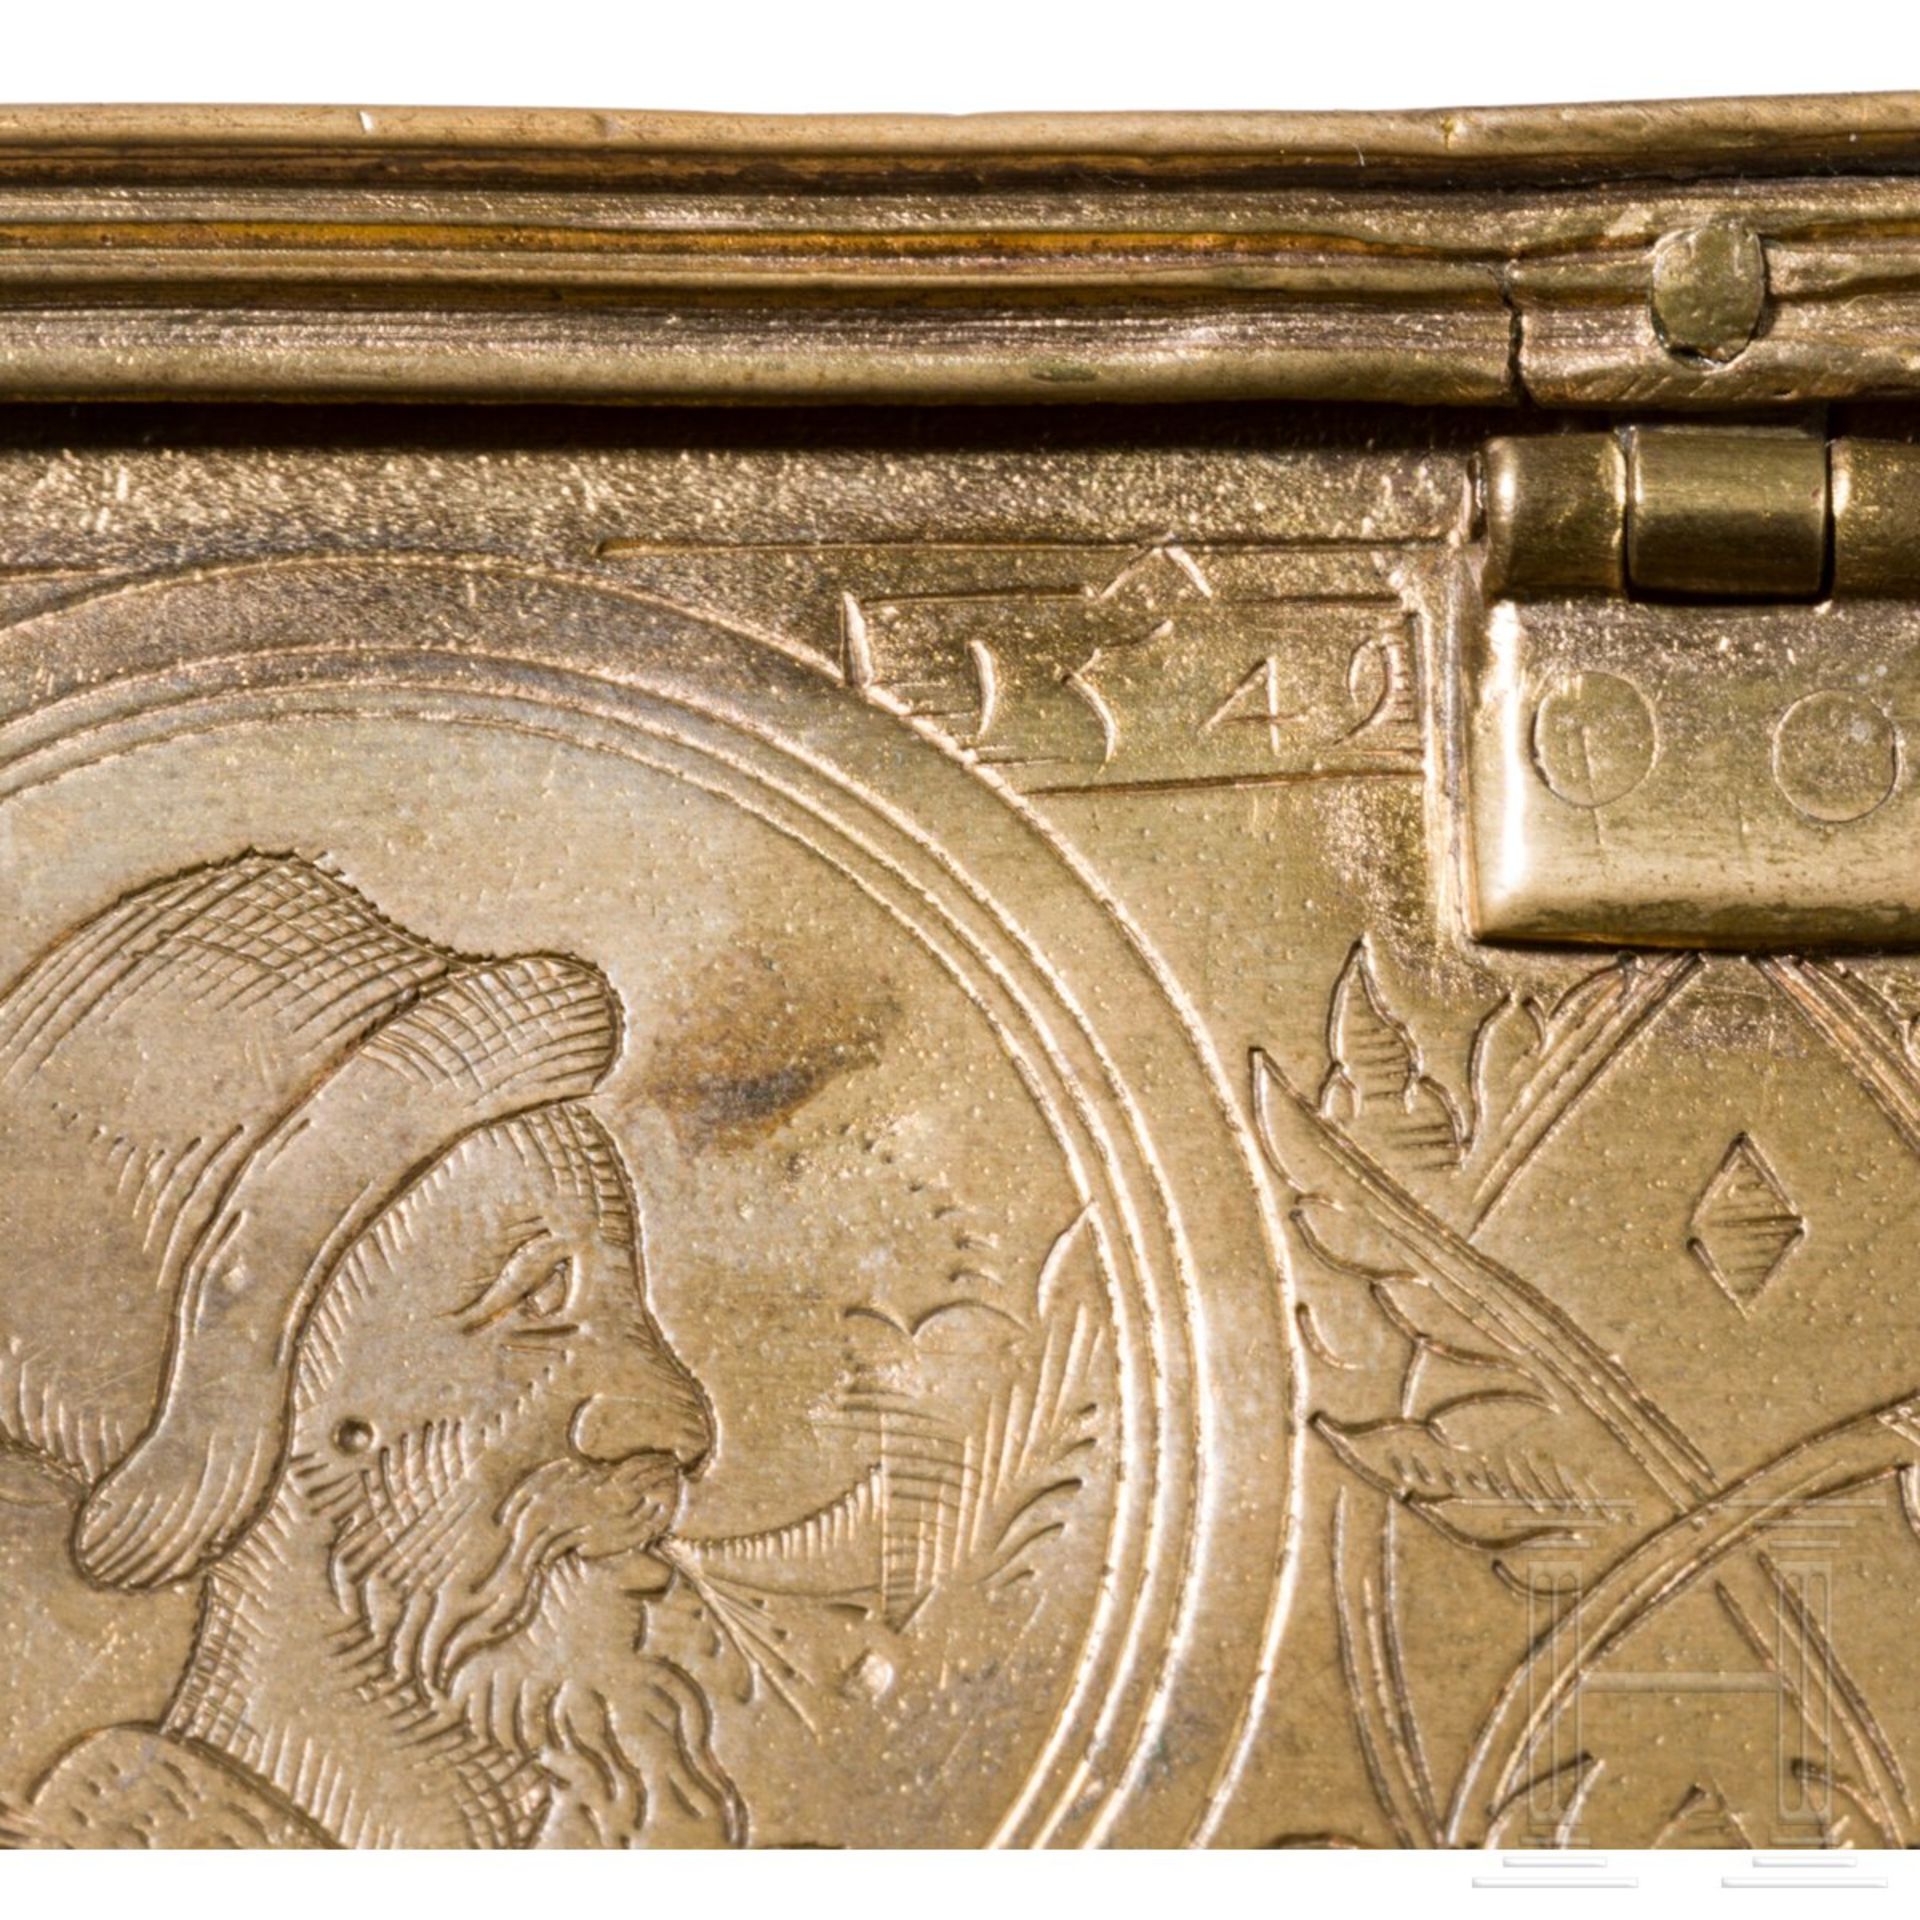 Vergoldetes und graviertes Renaissancekästchen, süddeutsch, datiert 1549 - Bild 5 aus 7